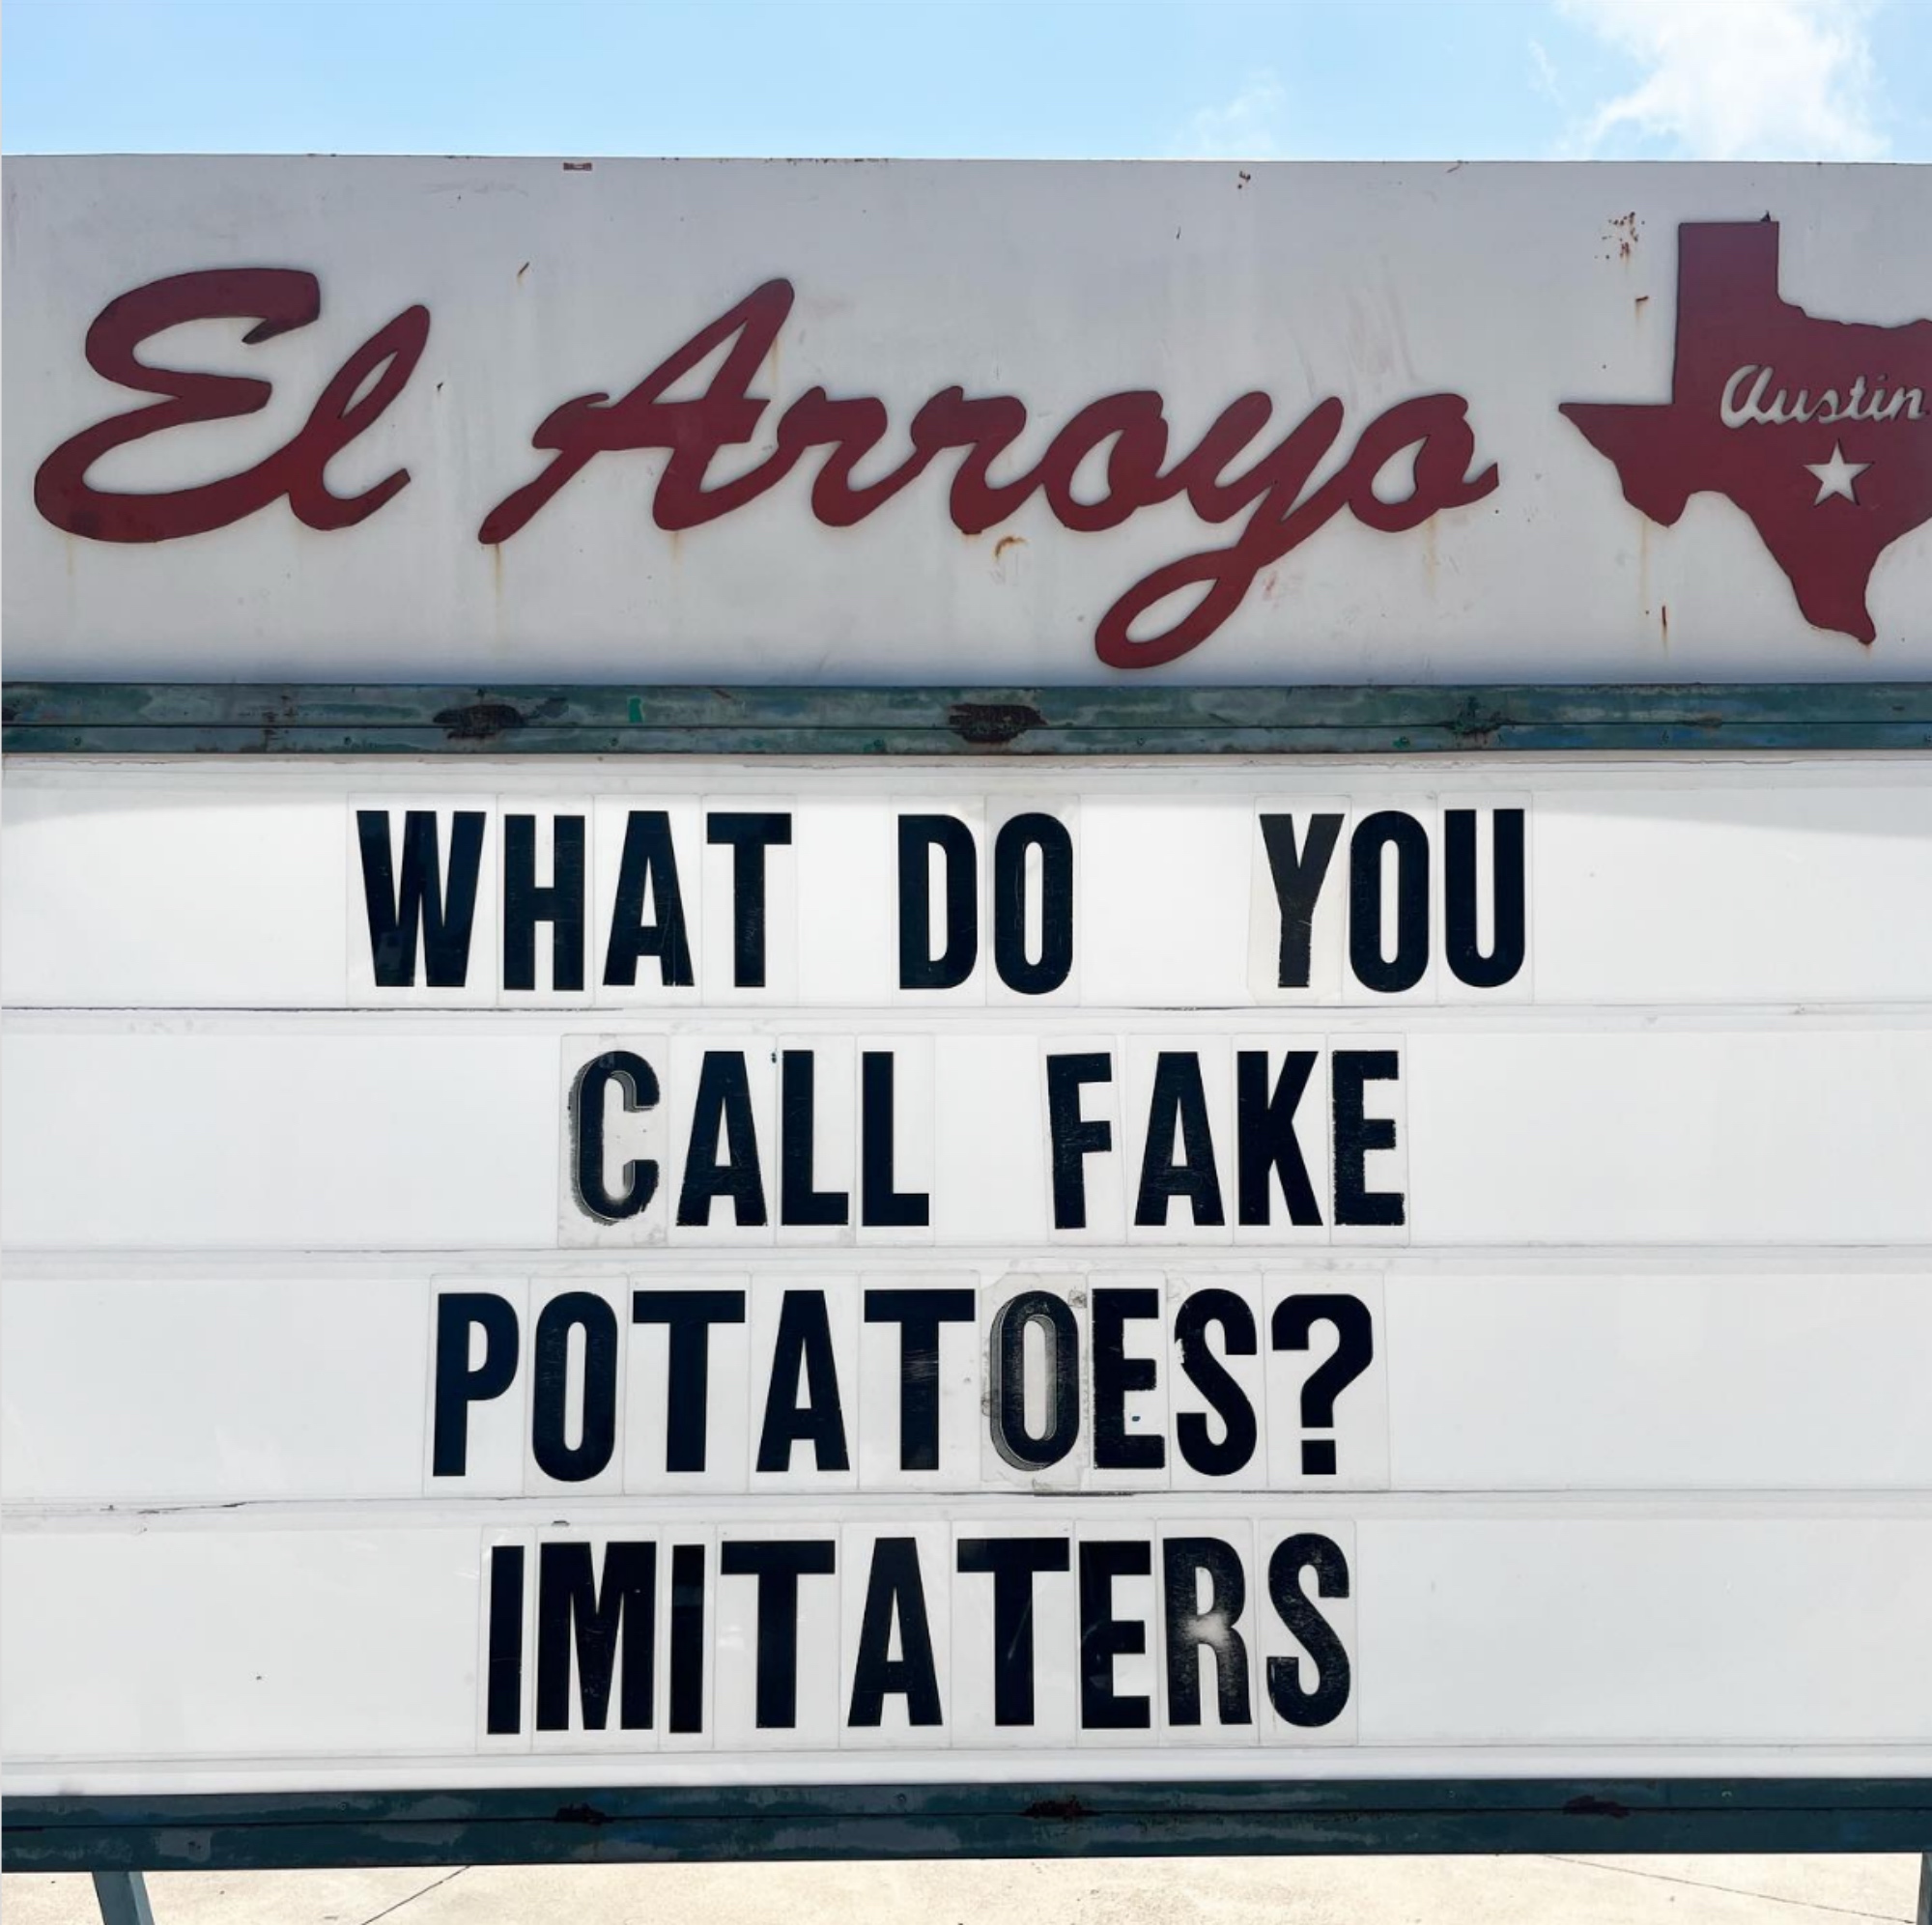 meme about potatoes joke